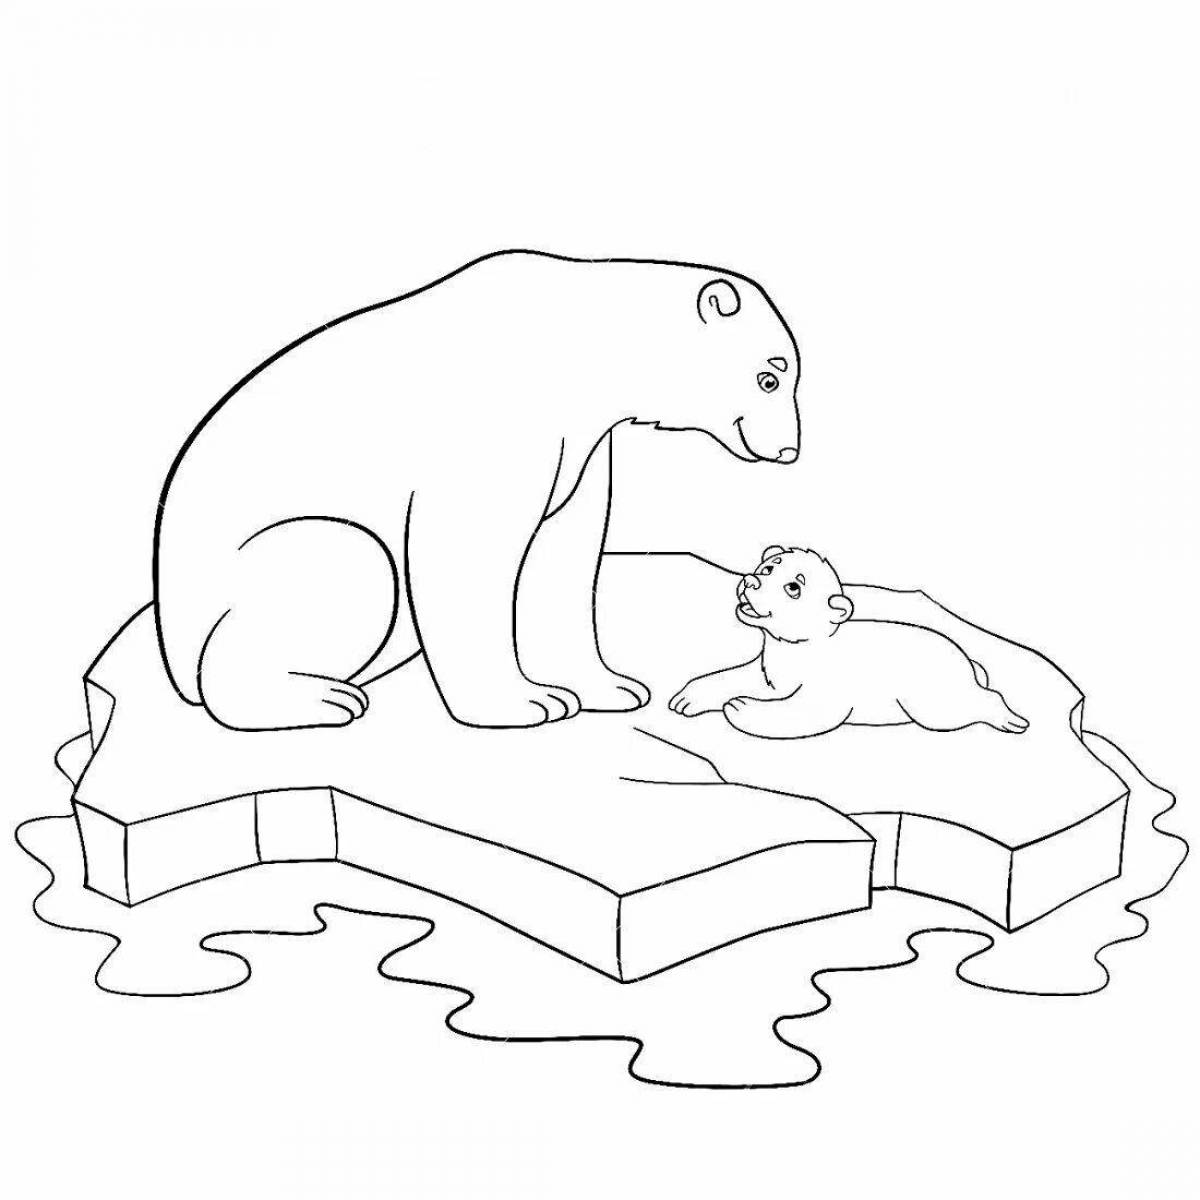 Coloring book beckoning northern bear